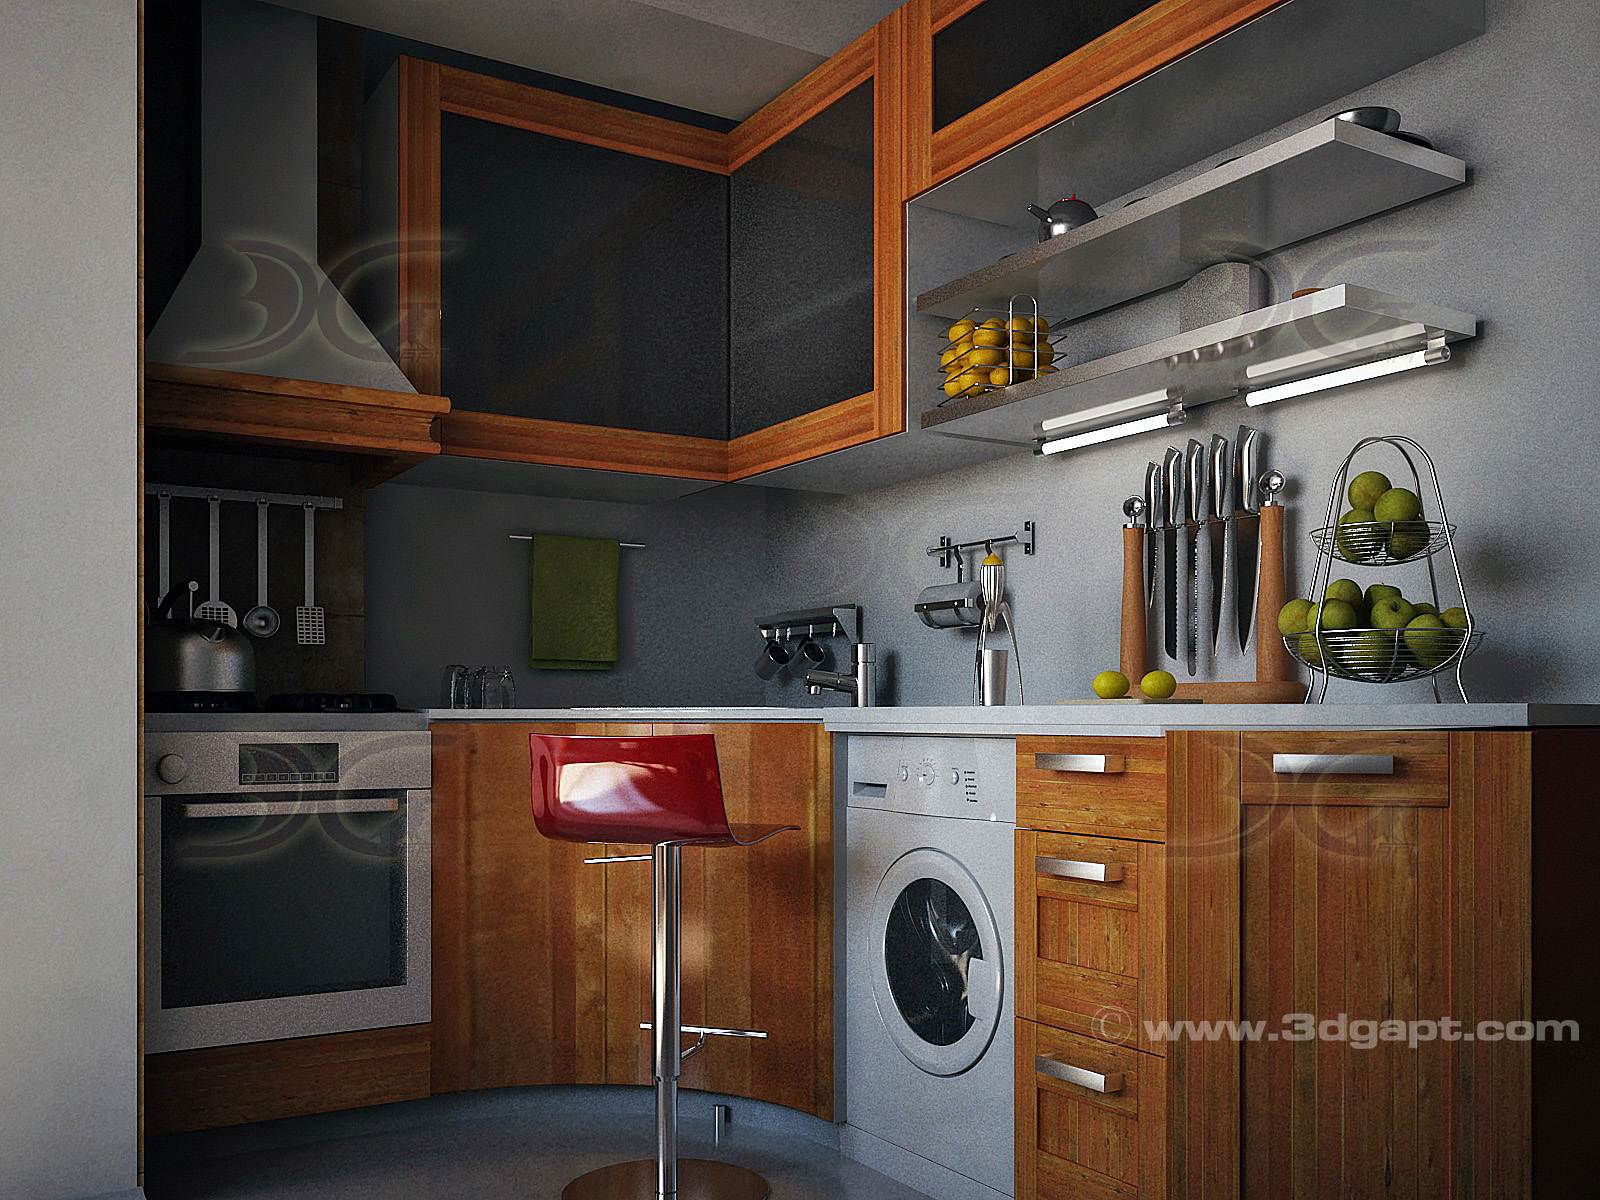 architecture interior kitchen-3versions 9